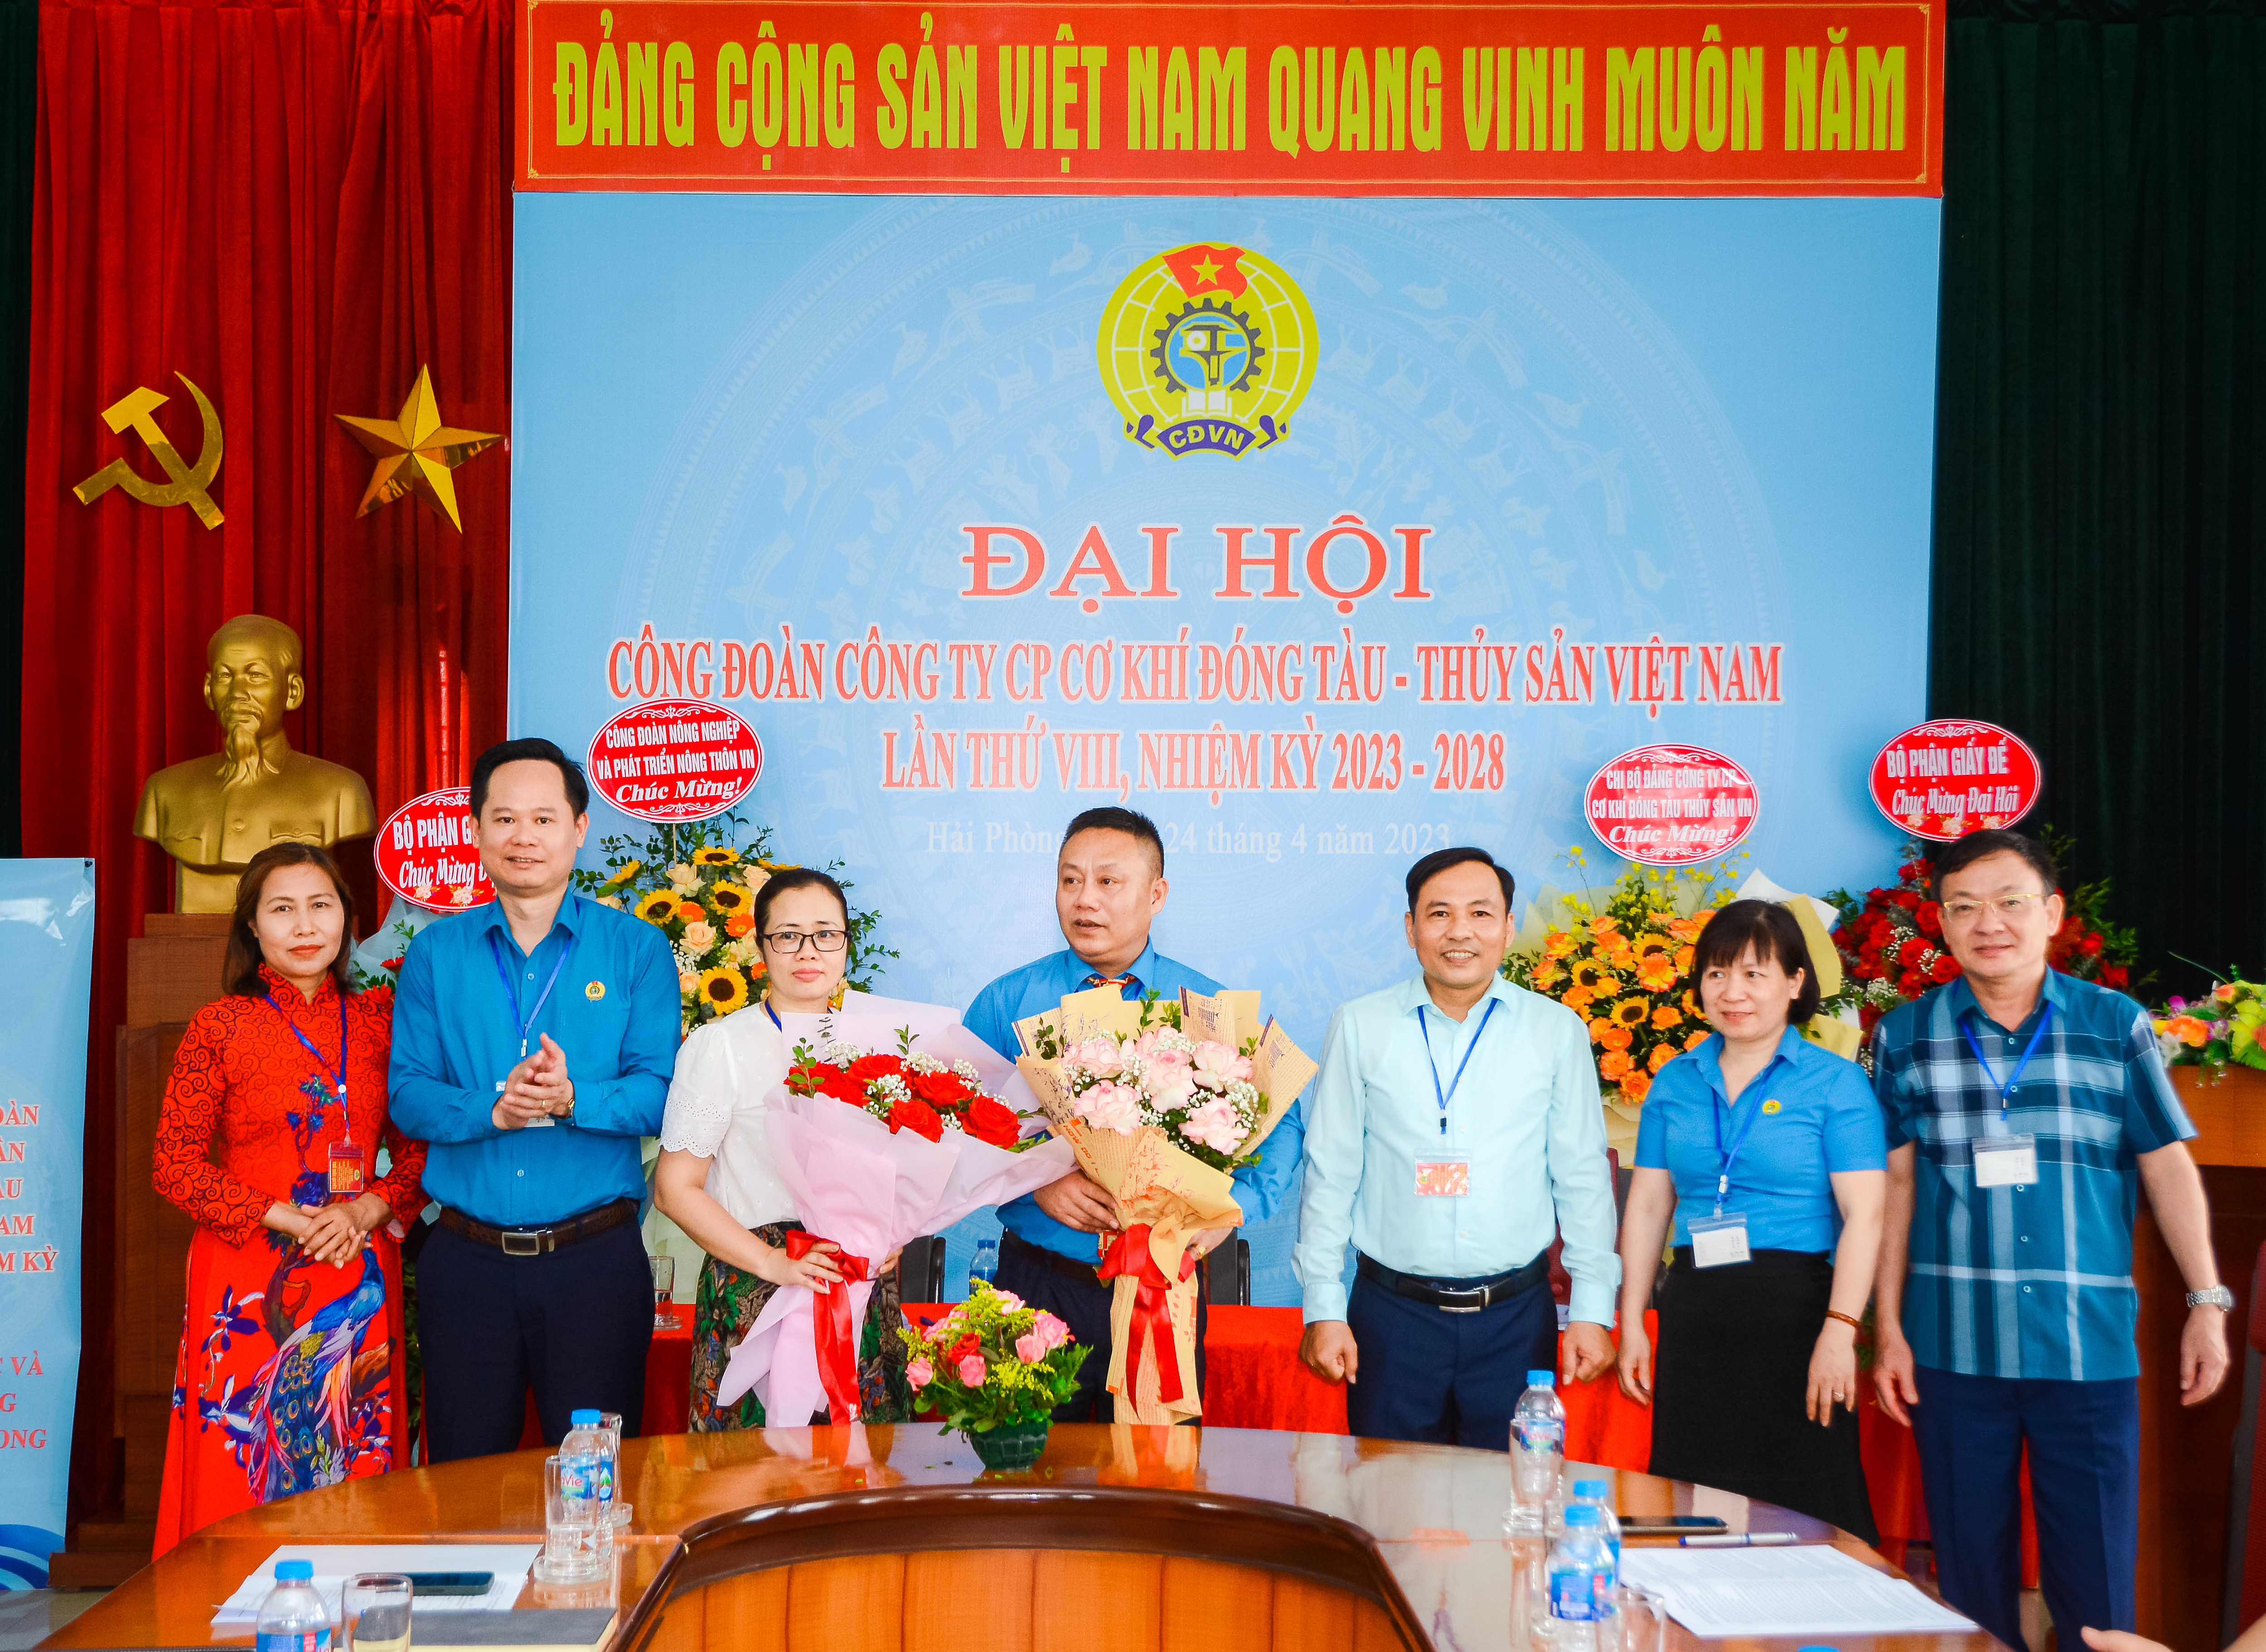 Đại hội Công đoàn cơ sở Công ty Cổ Phần Cơ khí Đóng tàu - Thủy sản Việt Nam lần thứ VIII, nhiệm kỳ 2023-2028 thành công tốt đẹp